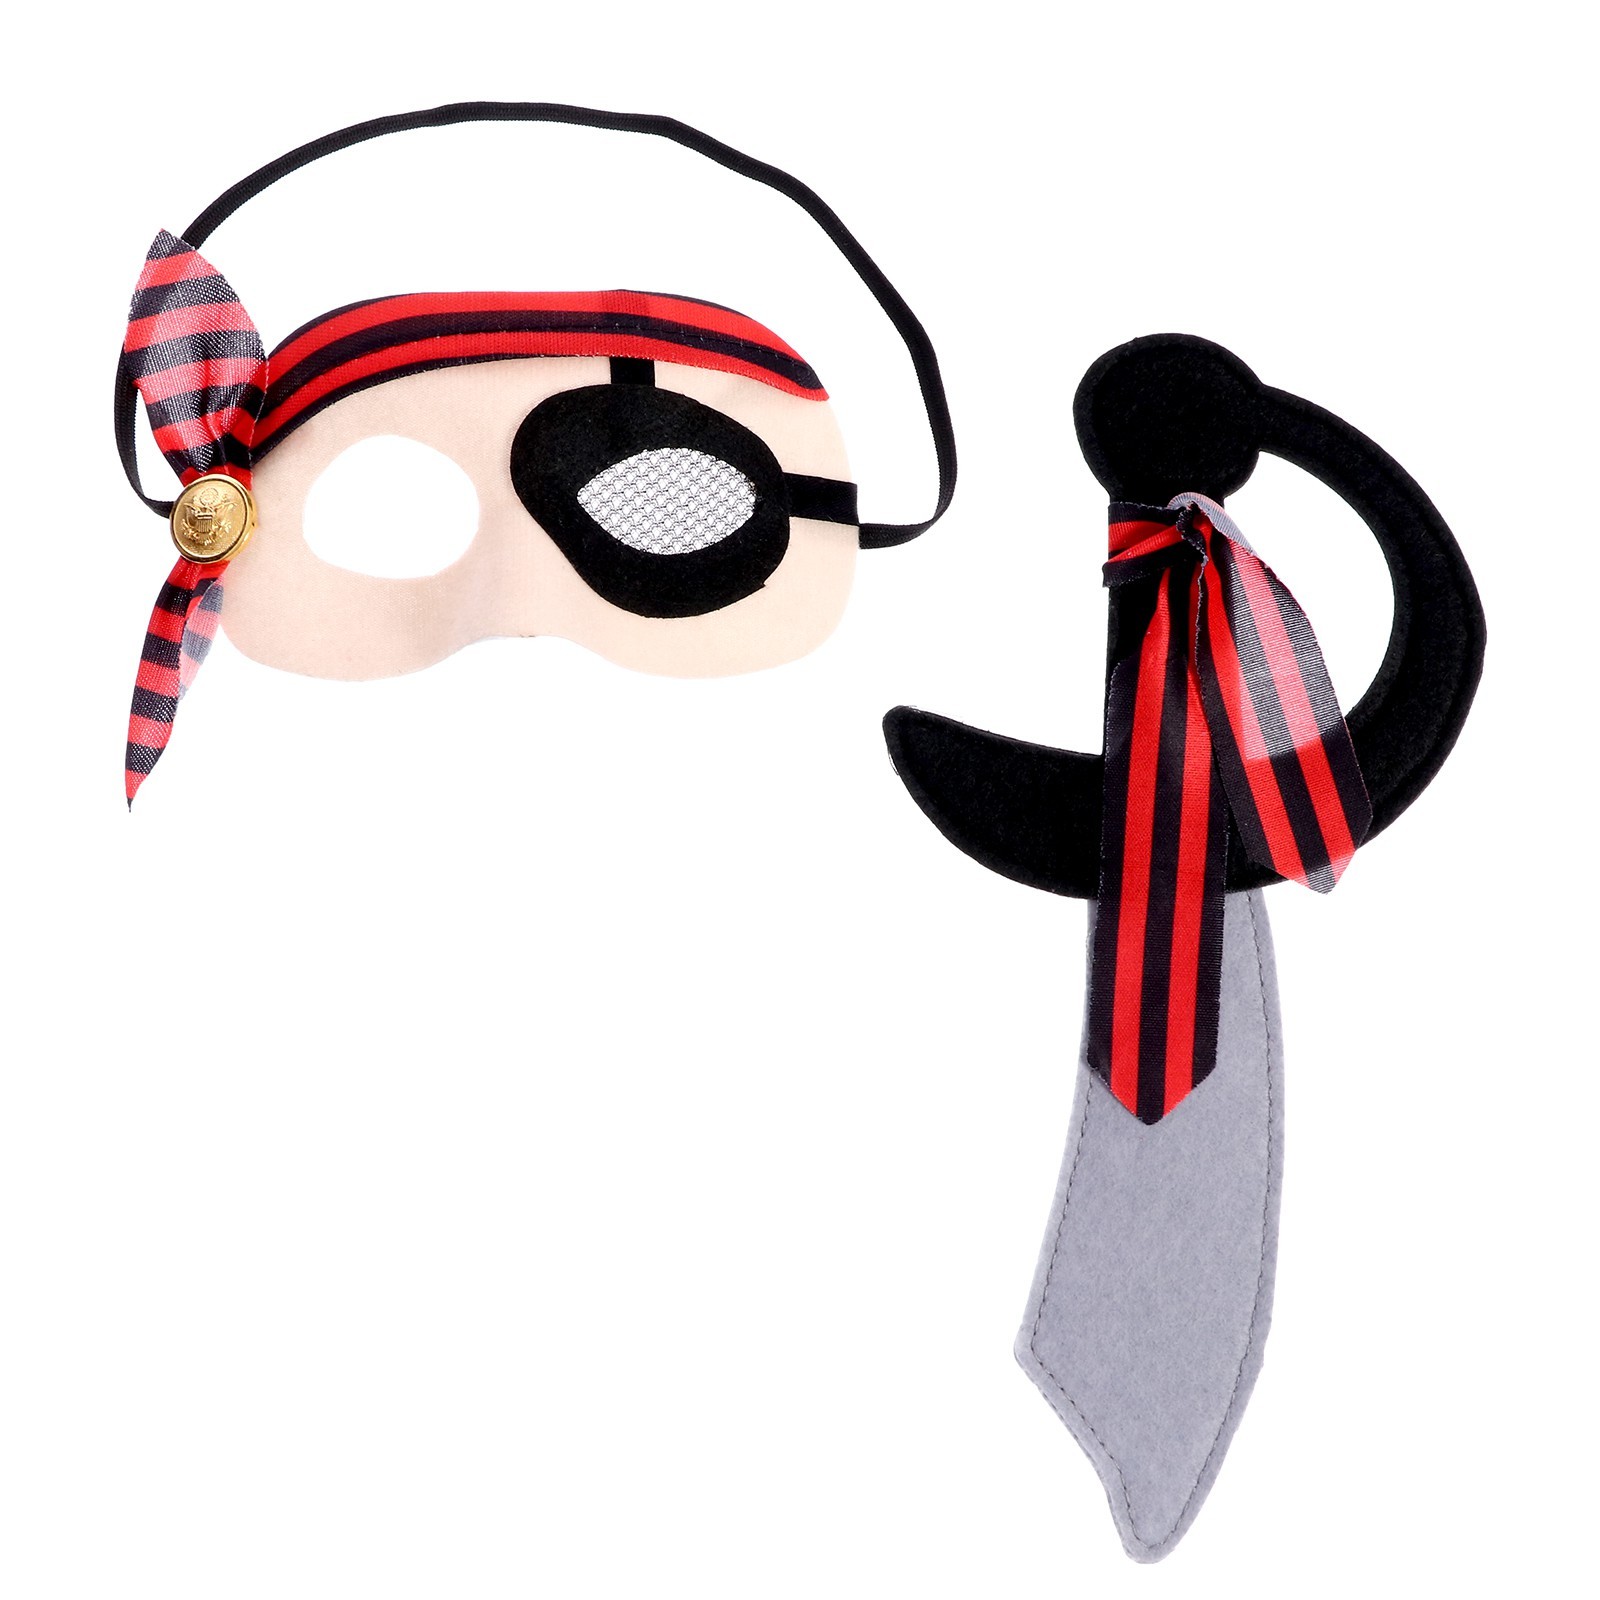 Карнавальный набор Пират, 2 предмета маска, нож карнавальный набор бандана в полоску маска с рогами белая термонаклейка